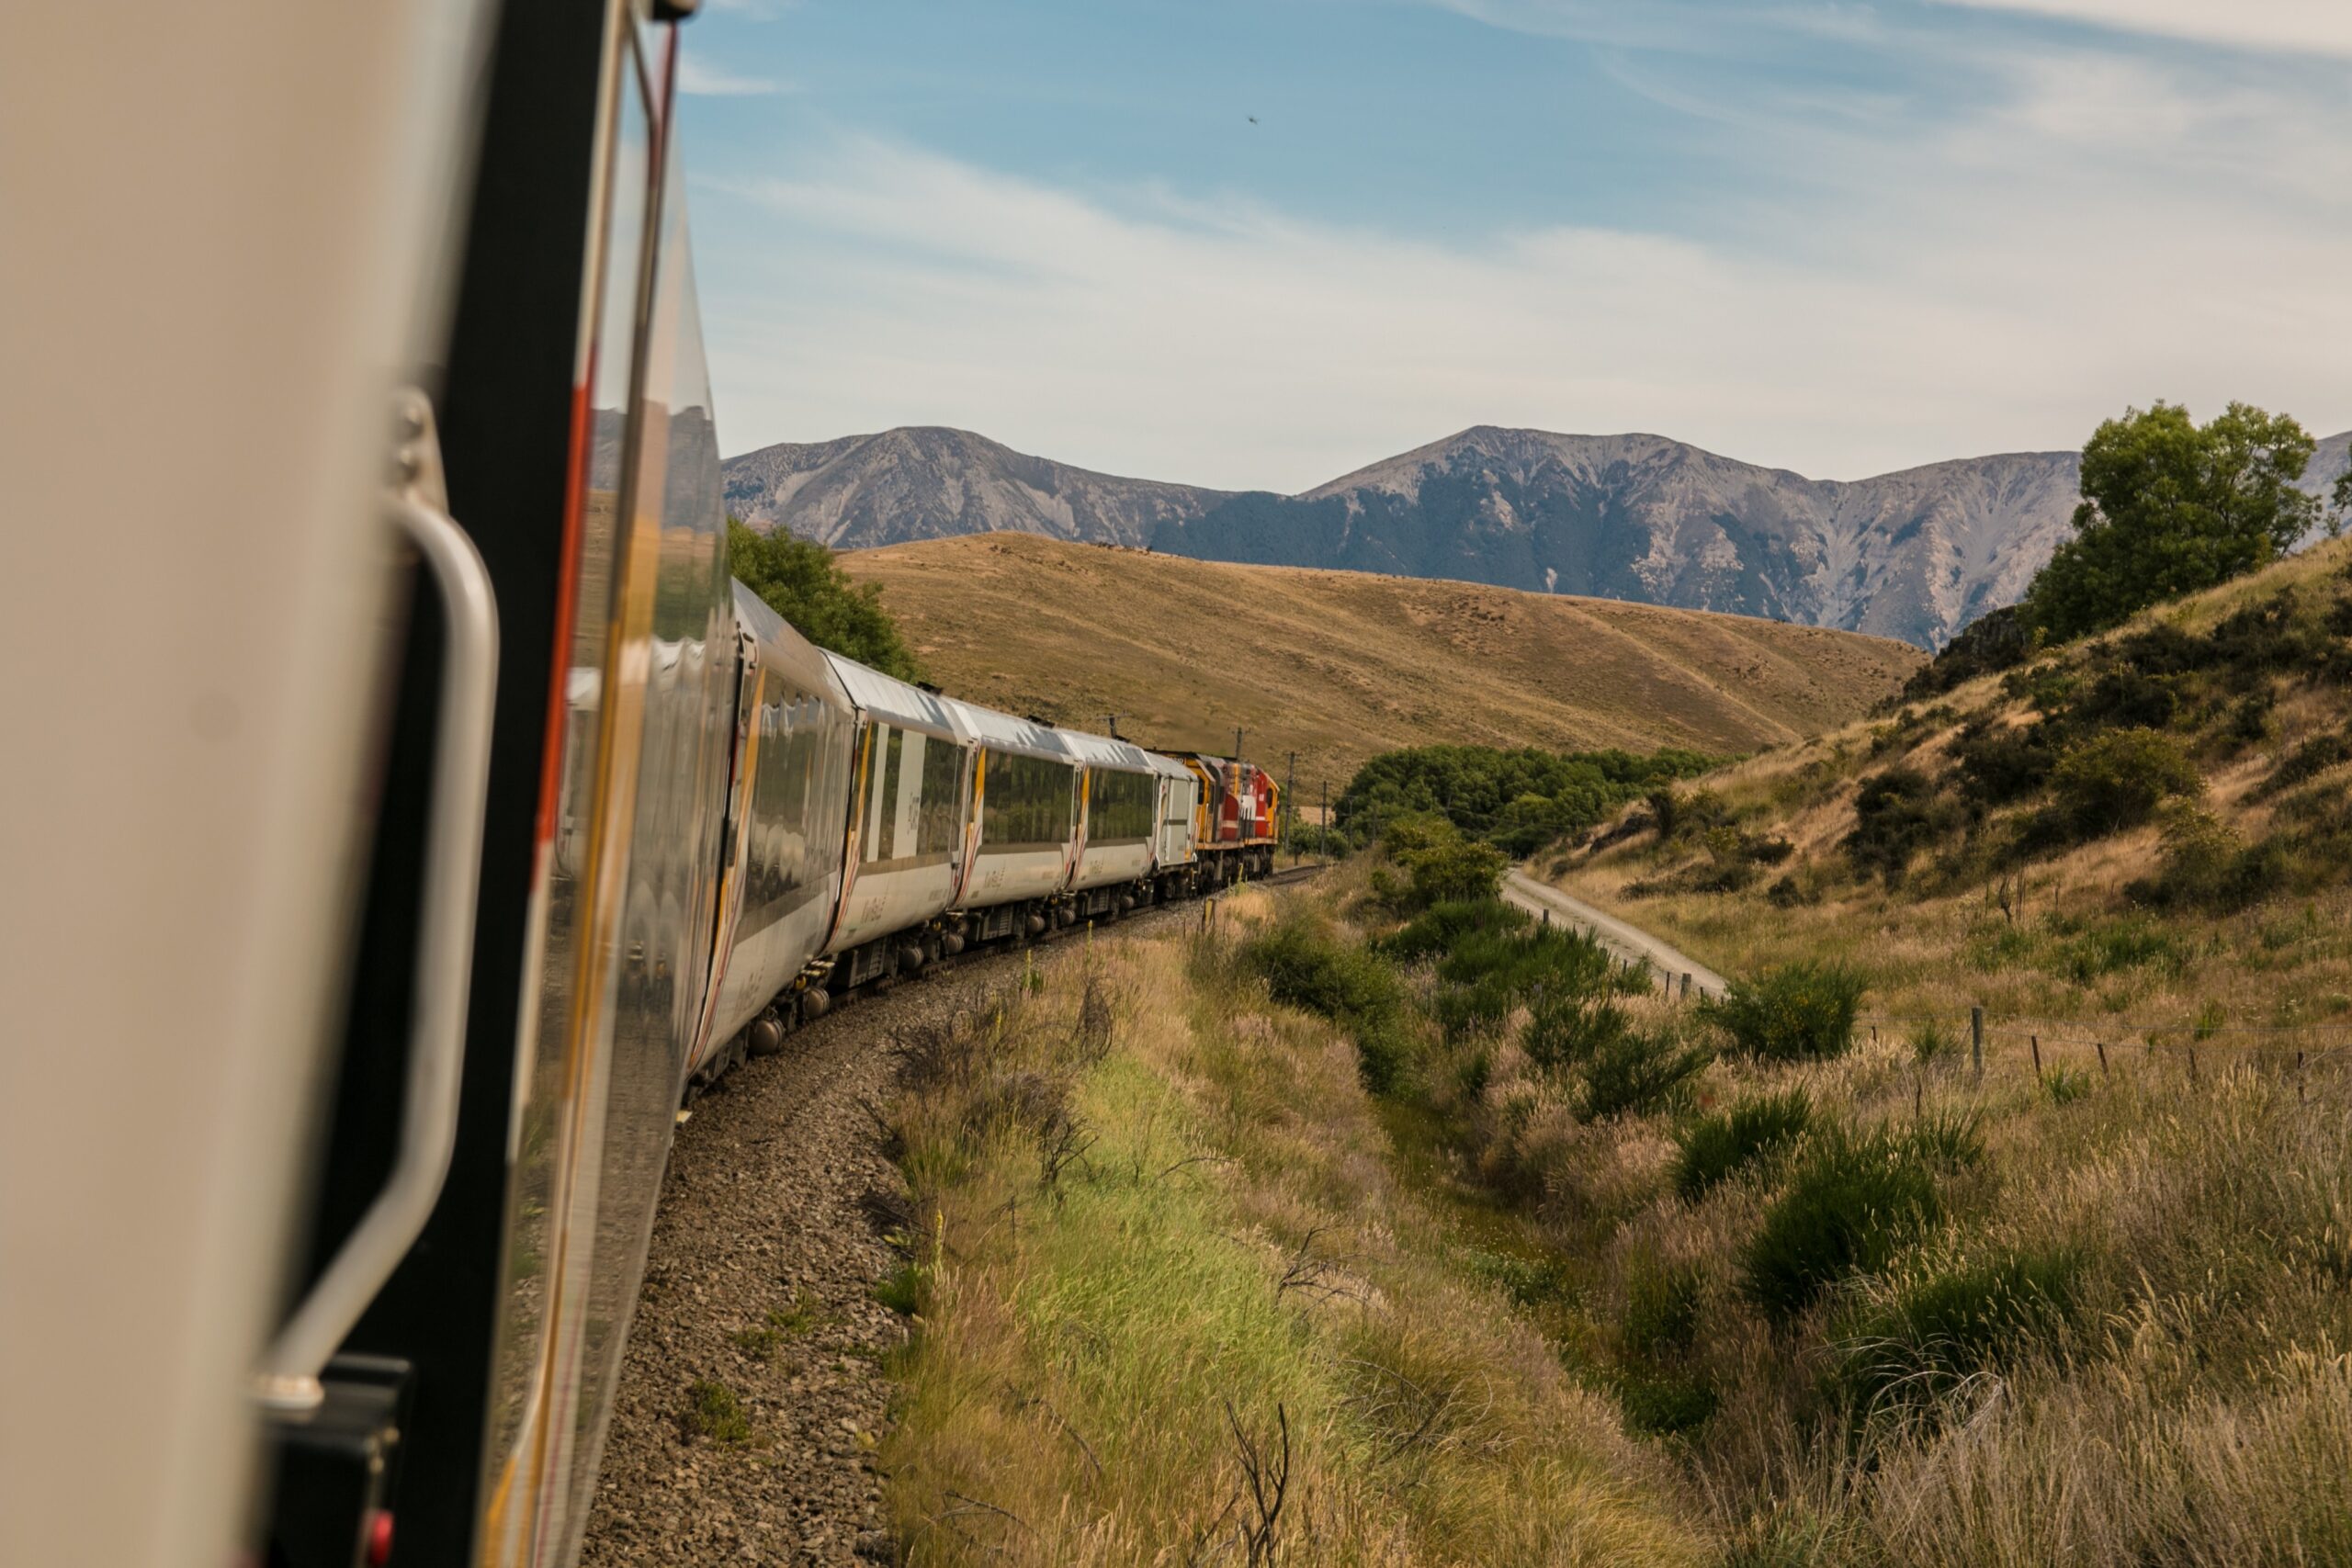 A train journeys through a brown mountainous area.